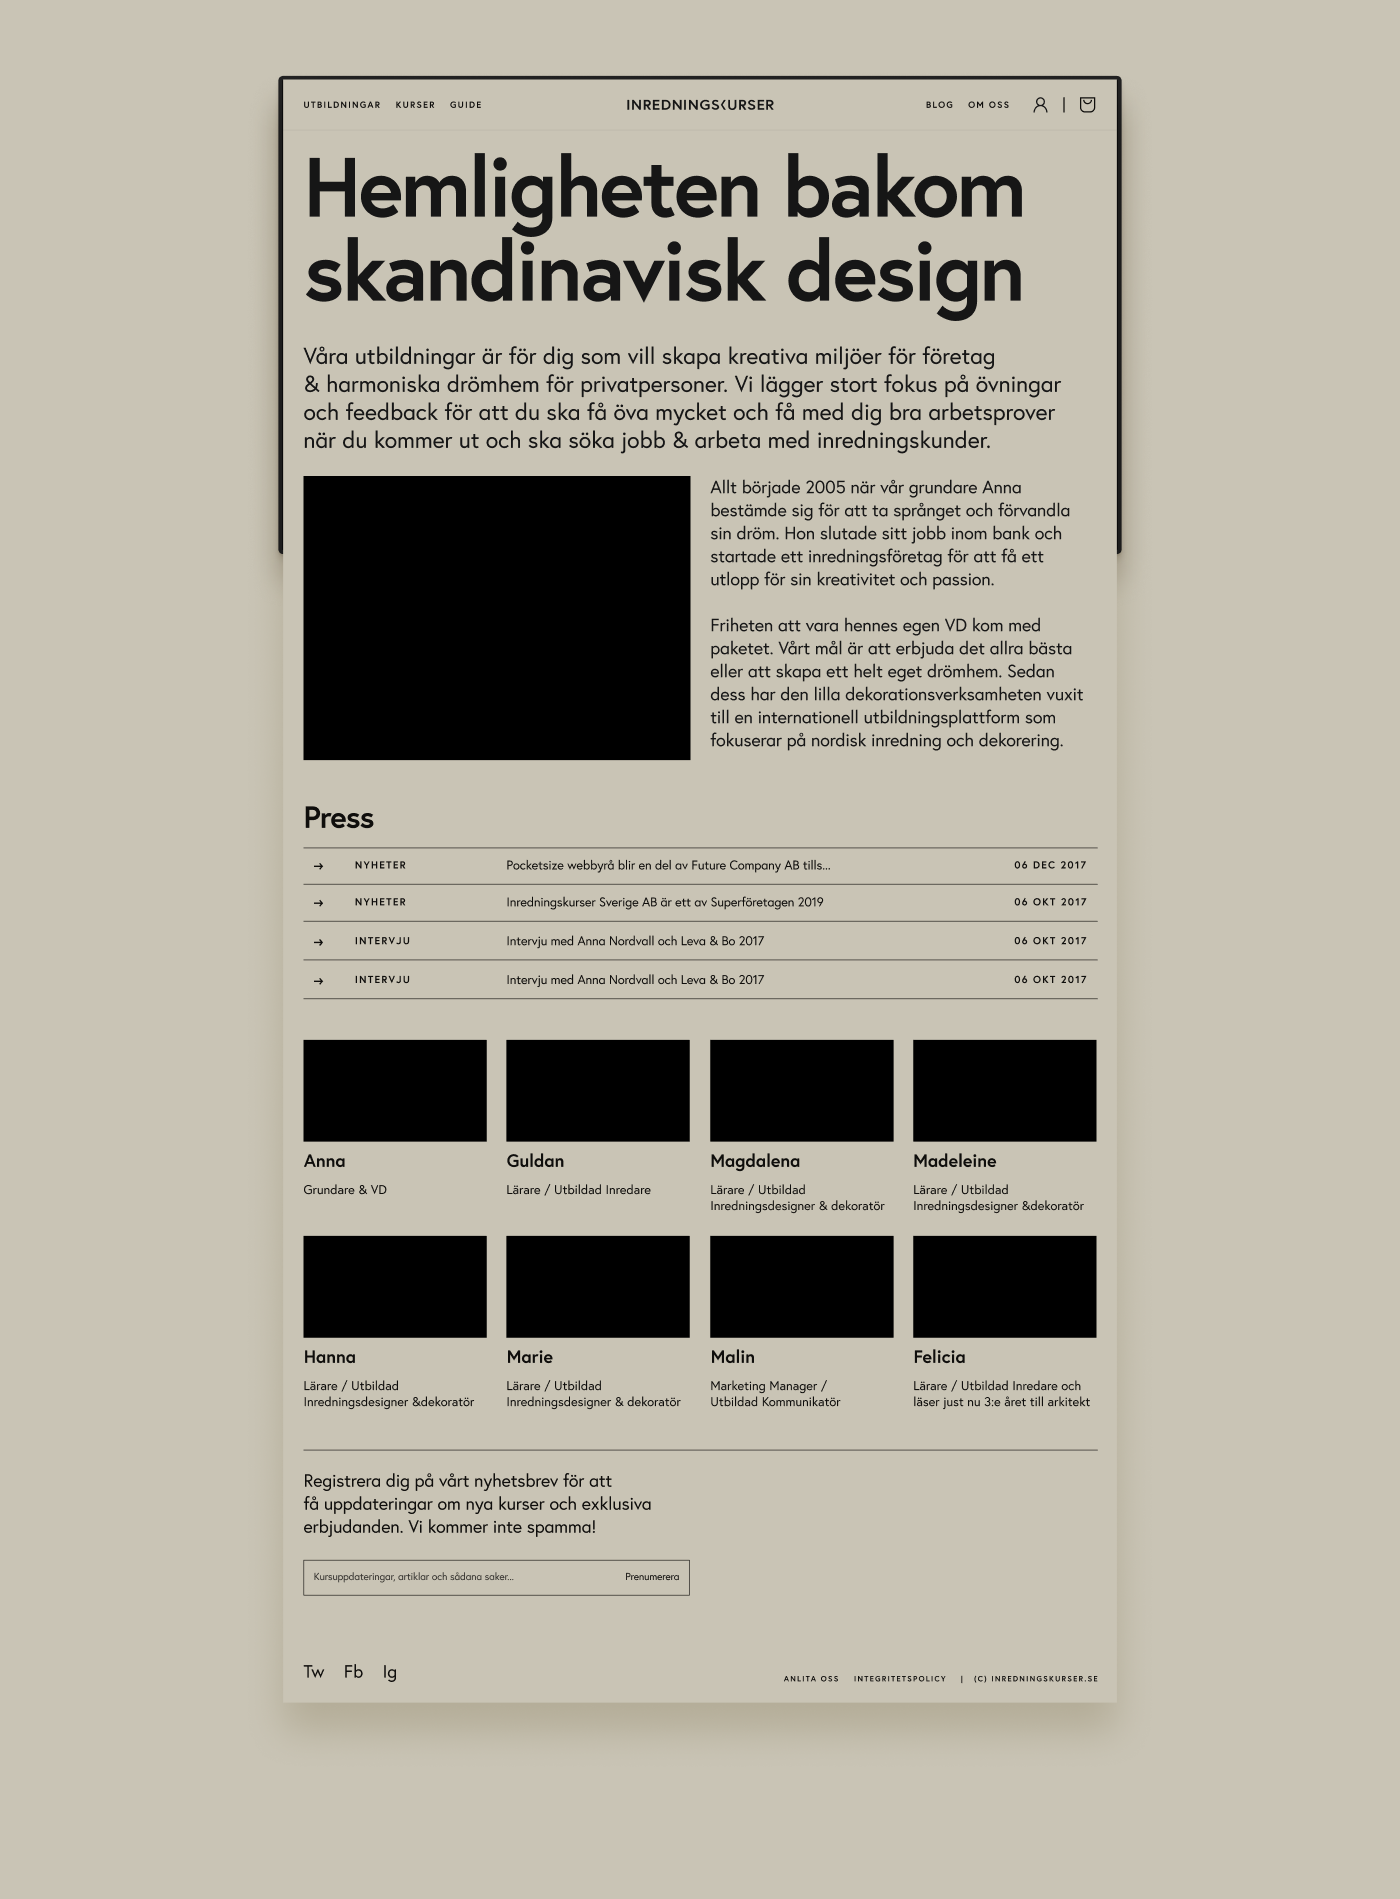 About me page for inredningskurser.se, Inredningskurser by Lucas Olsson